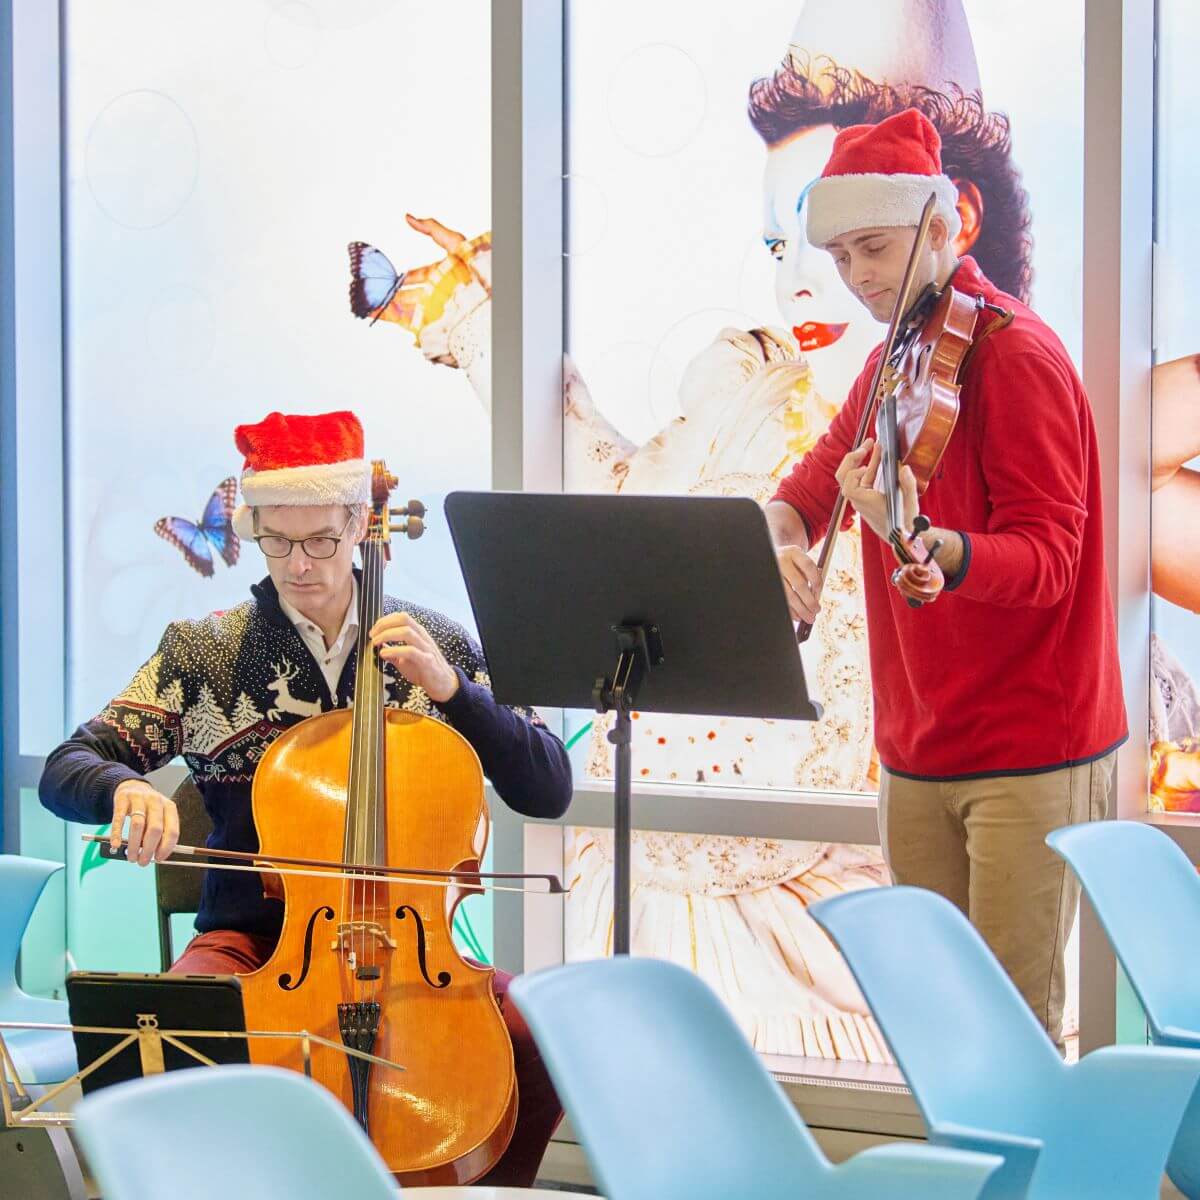 Un concert de Noël impromptu pour les enfants et leurs familles au CHU Sainte-Justine aura certainement su embellir cette journée. (Photo: Véronique Lavoie)